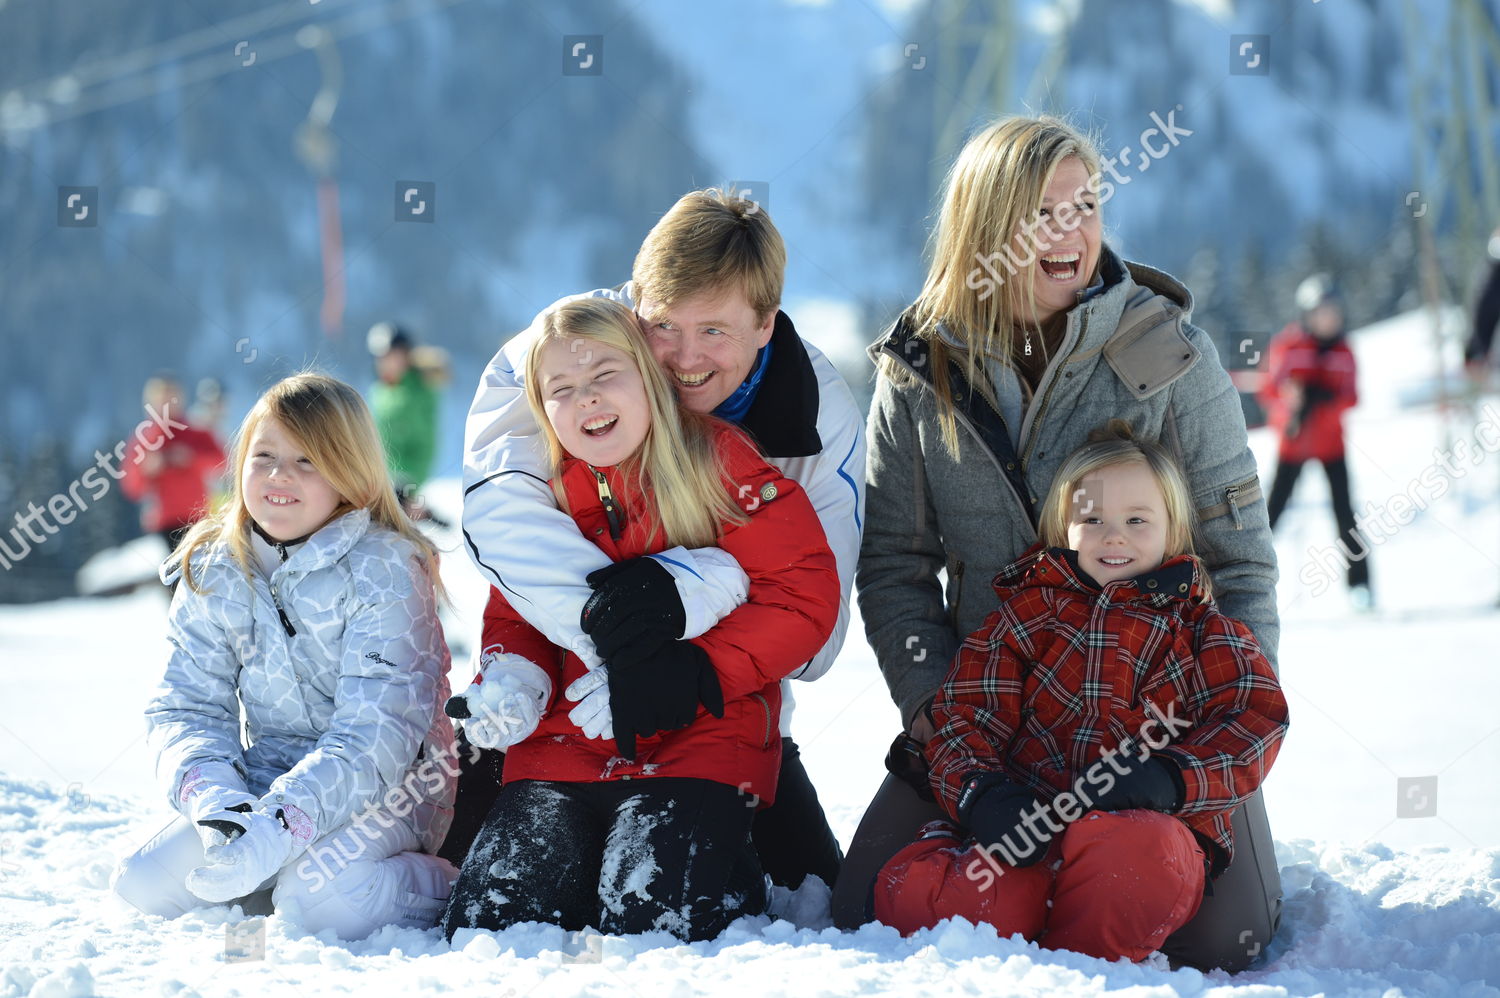 dutch-royals-skiing-photocall-lech-austria-shutterstock-editorial-2148227l.jpg